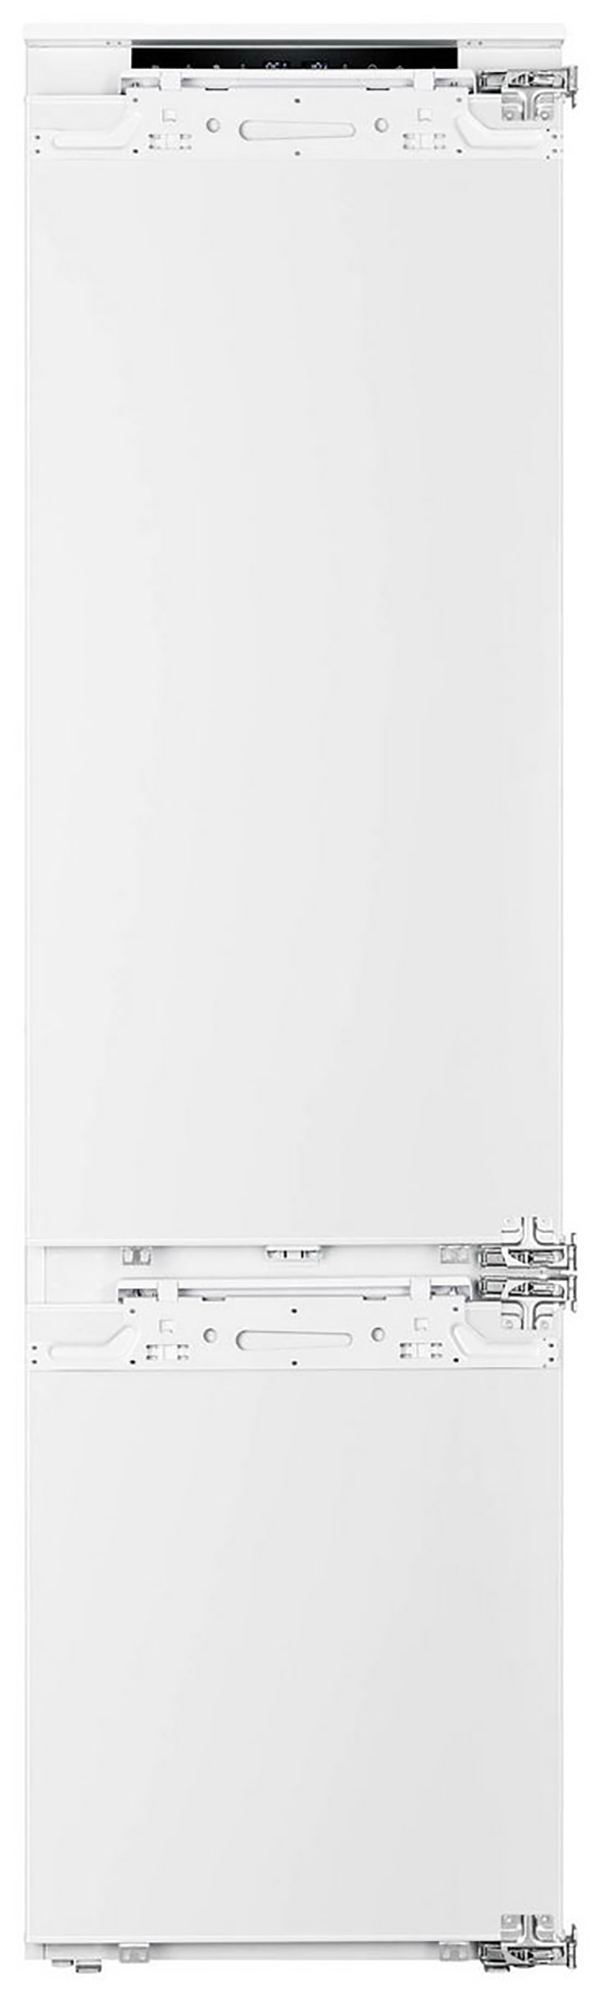 Встраиваемый холодильник Korting KSI 19547 CFNFZ белый встраиваемый холодильник korting ksi 19547 cfnfz